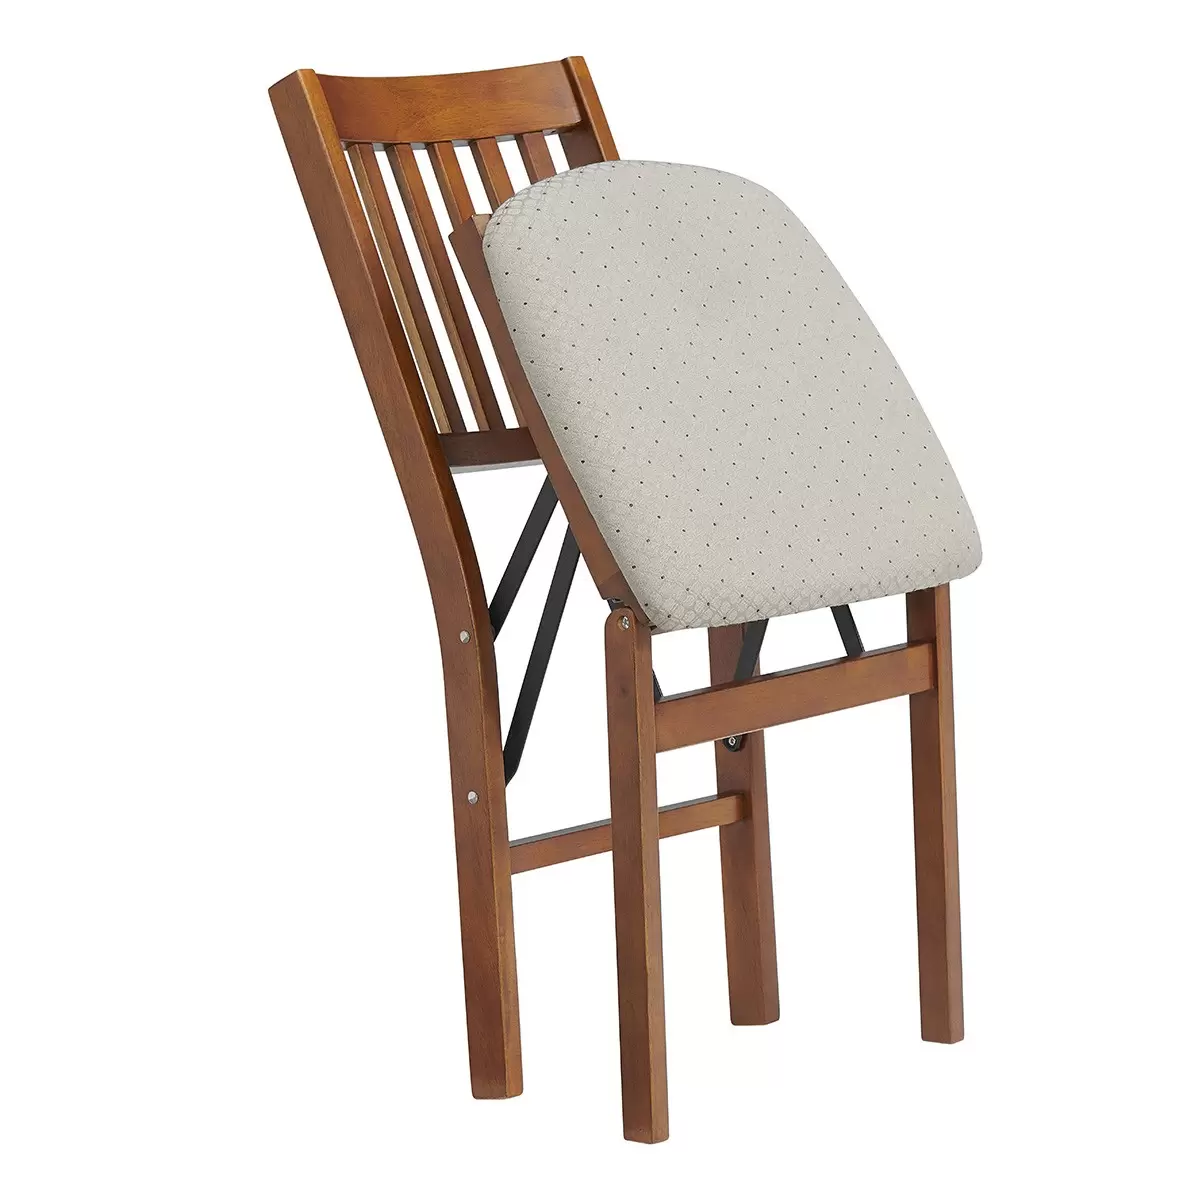 Stakmore 簡約實木摺疊椅 果木色